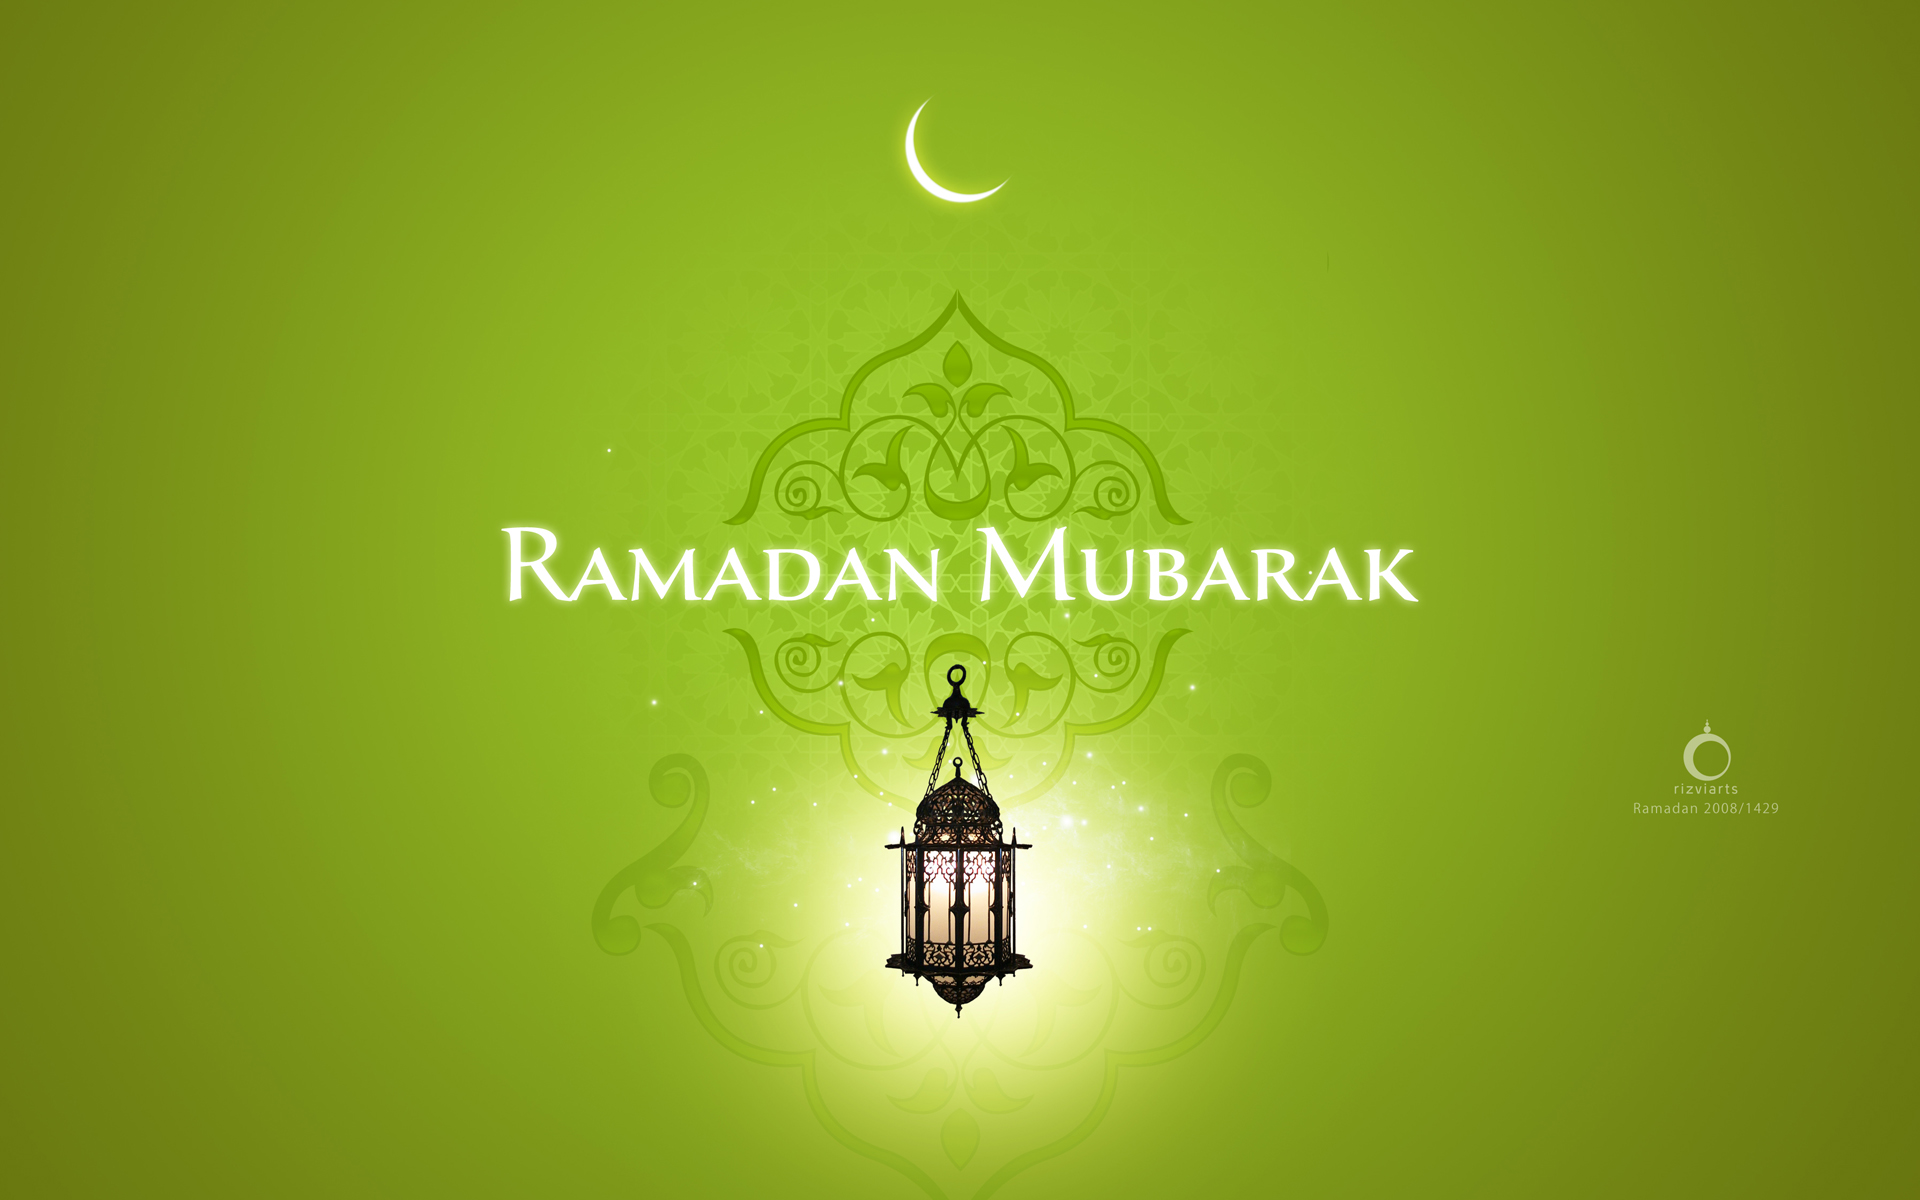 fond d'écran ramadan de haute qualité,vert,éclairage,texte,luminaire,police de caractère